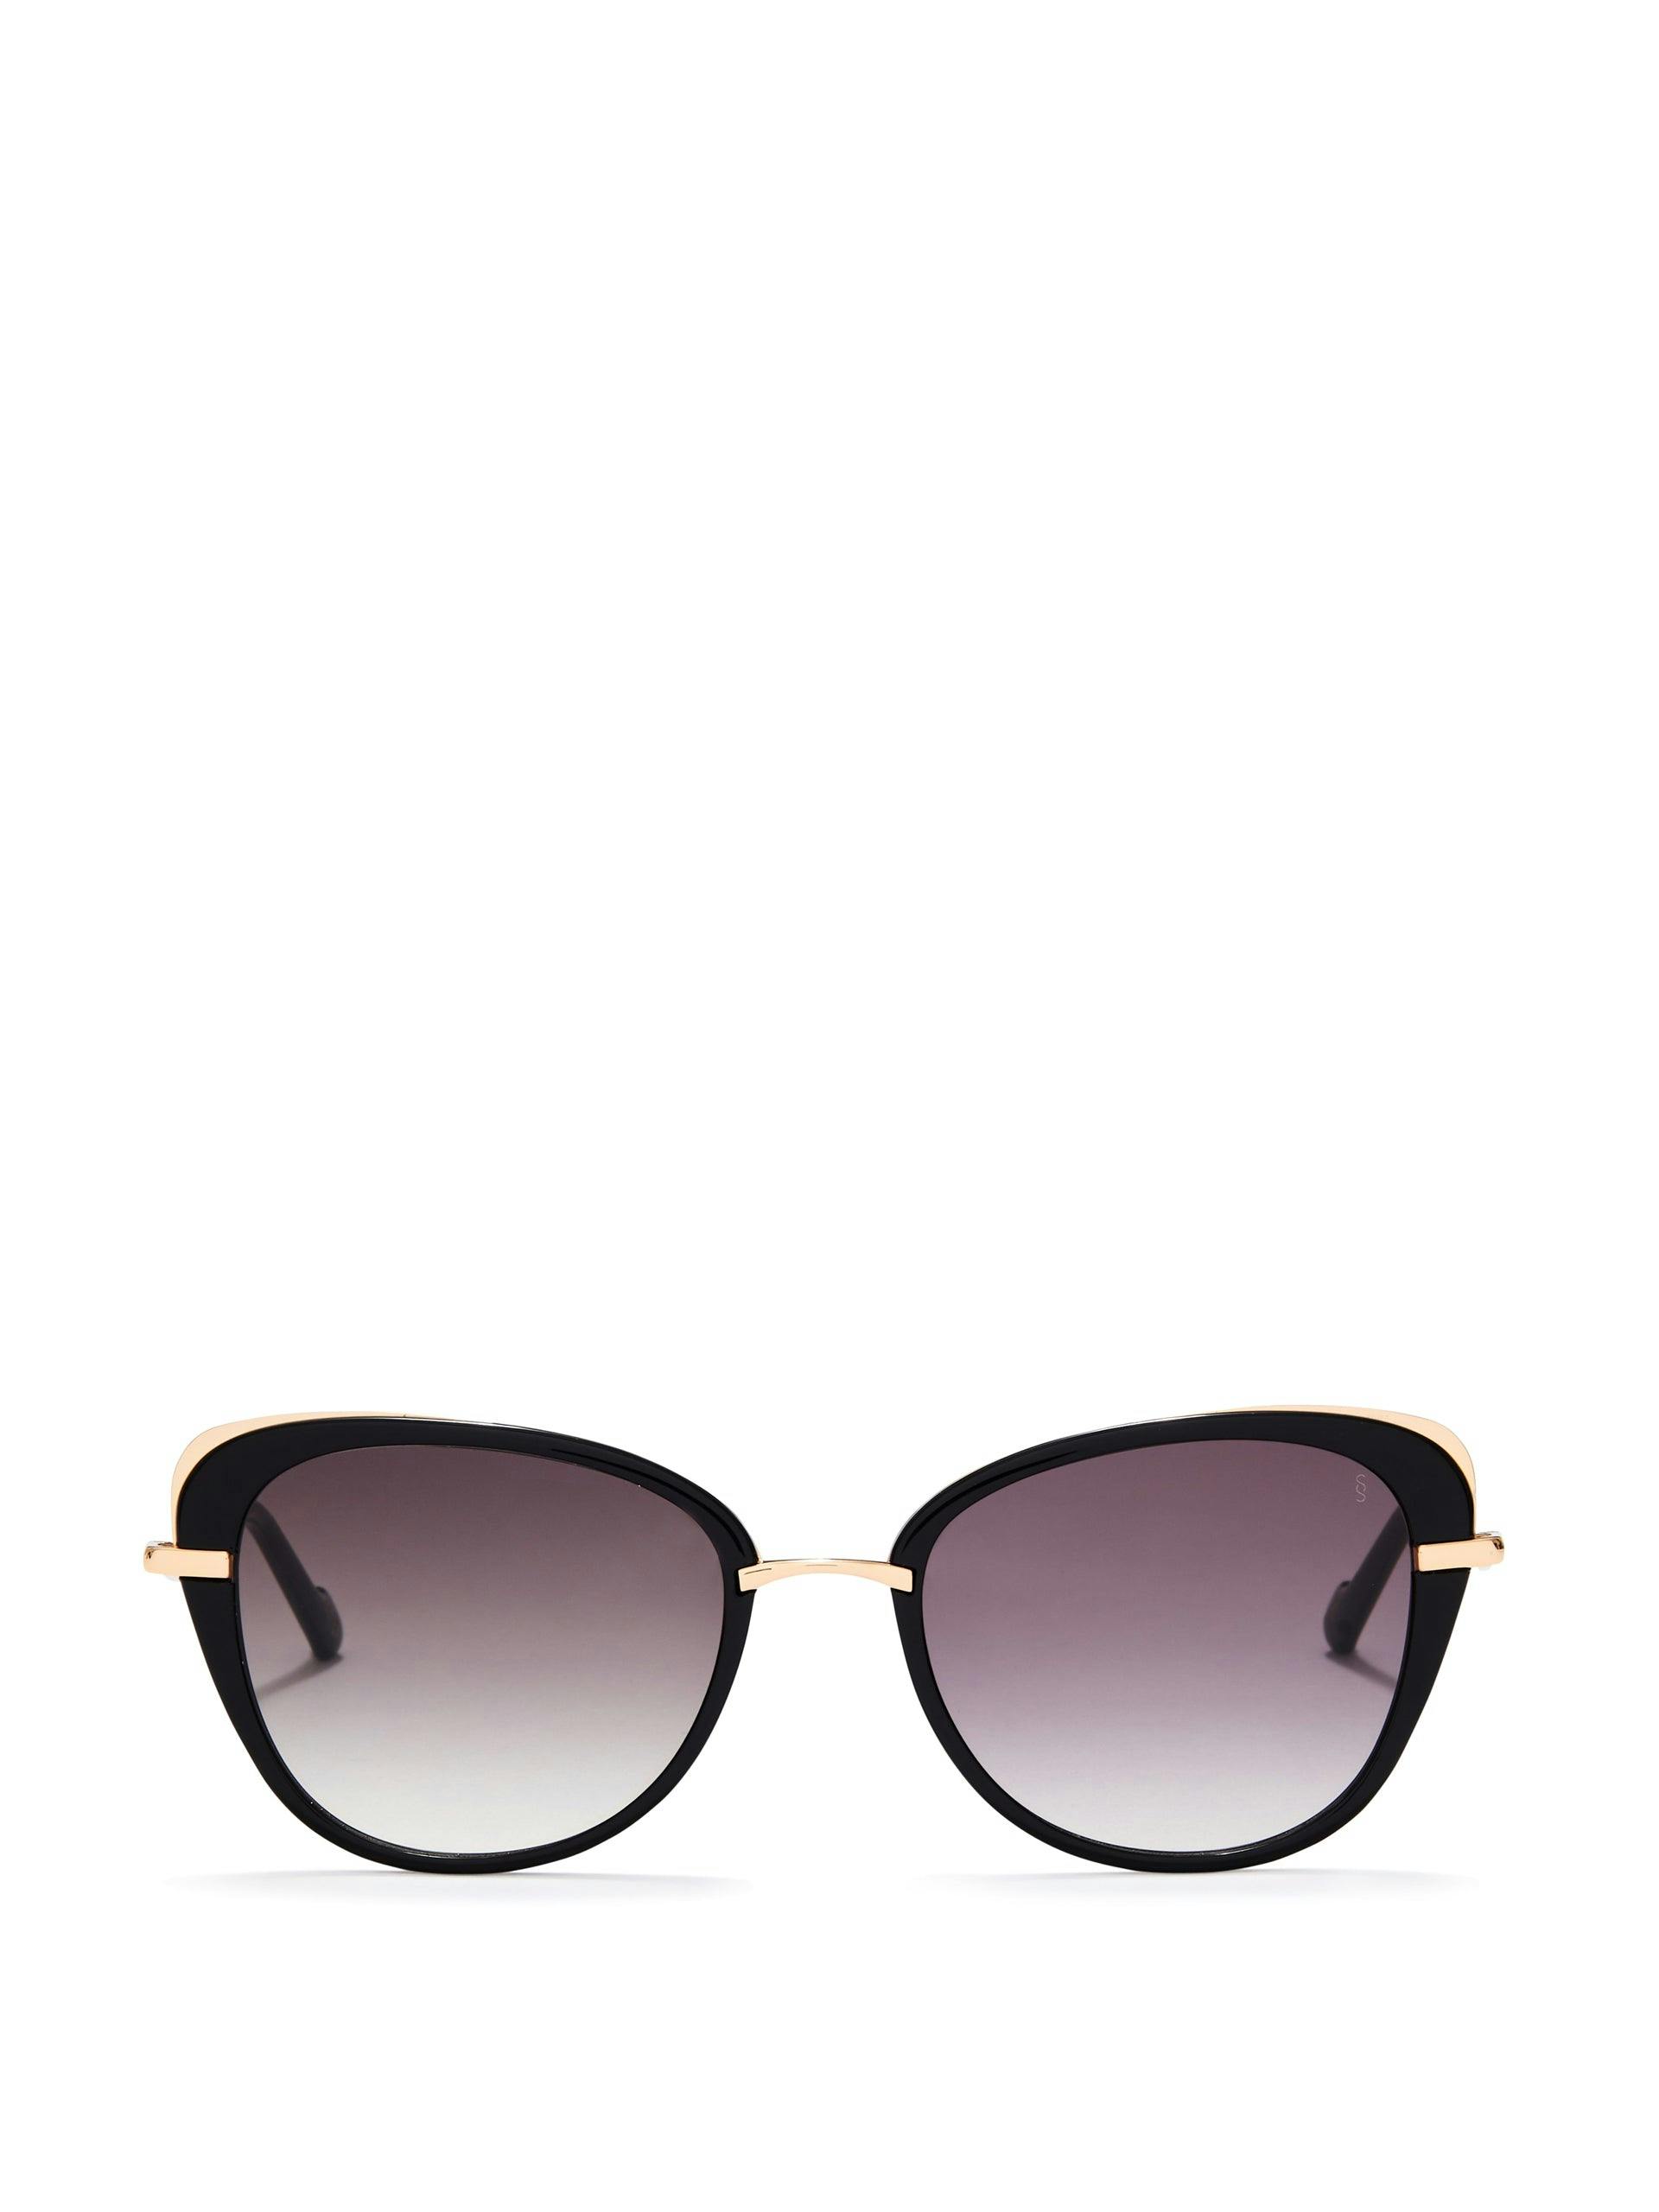 Blondie sunglasses in black